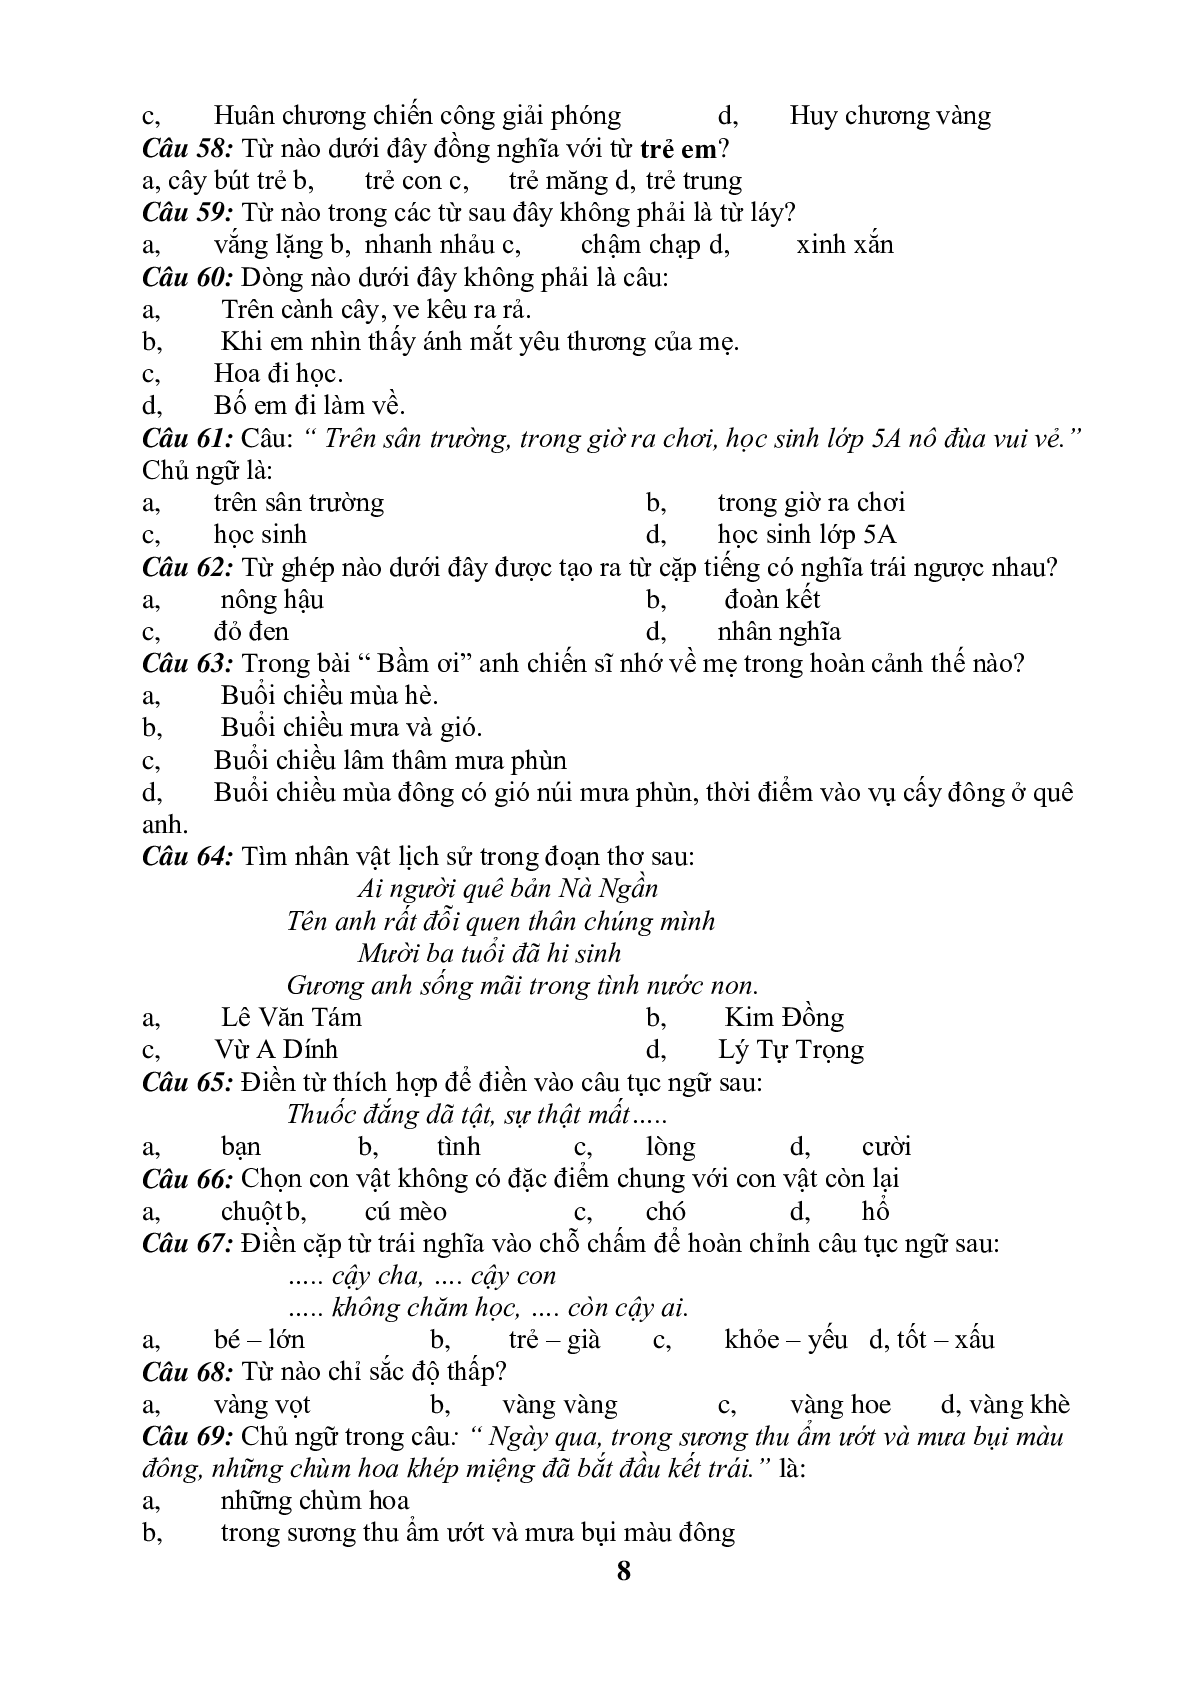 99 câu trắc nghiệm bồi dưỡng HSG môn Tiếng Việt lớp 5 (trang 8)